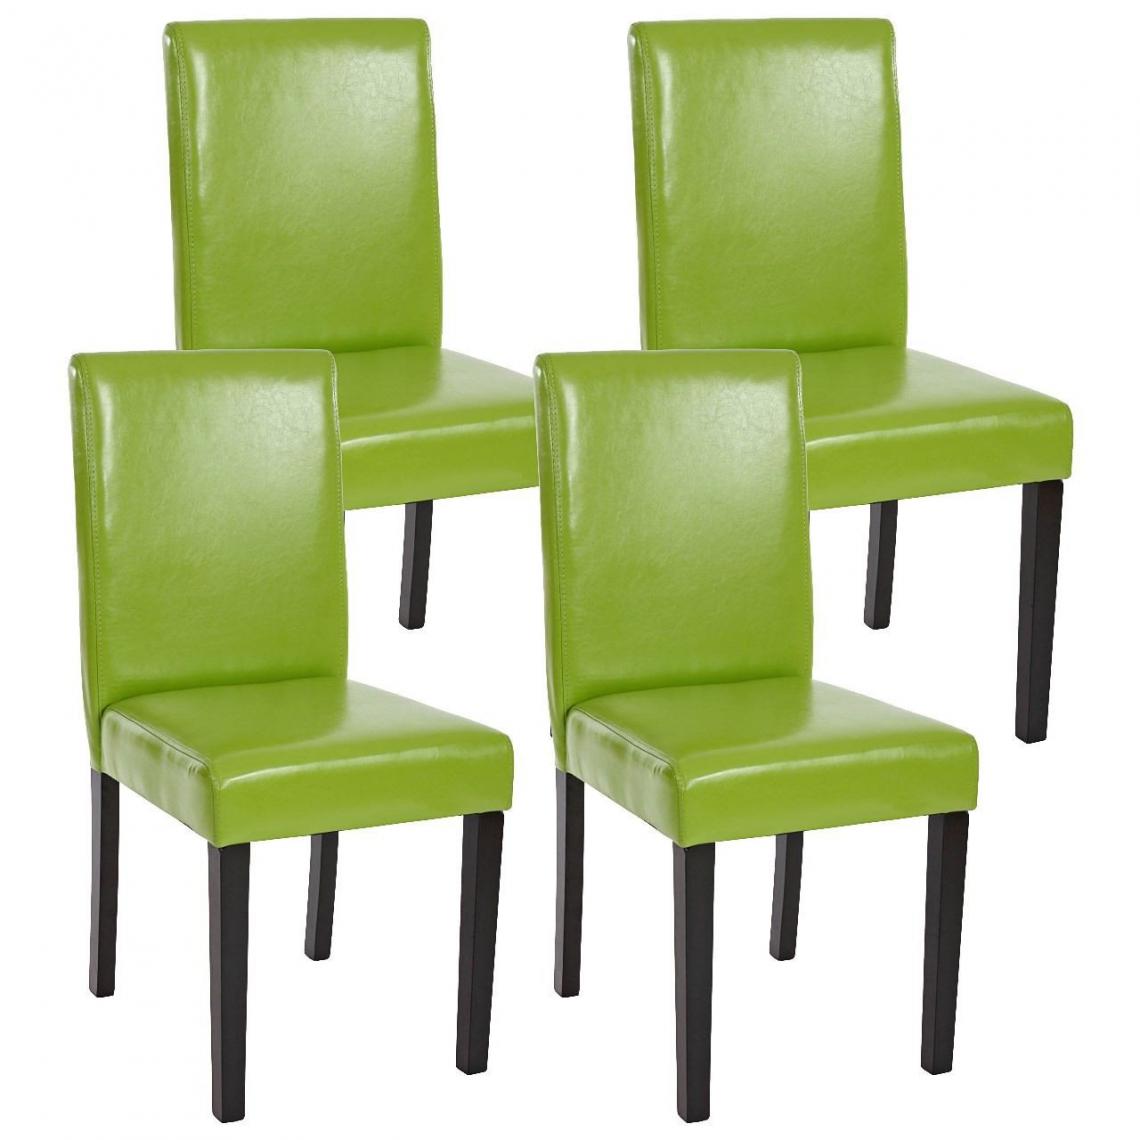 Decoshop26 - Lot de 4 chaises de salle à manger simili-cuir vert pieds foncés CDS04132 - Chaises